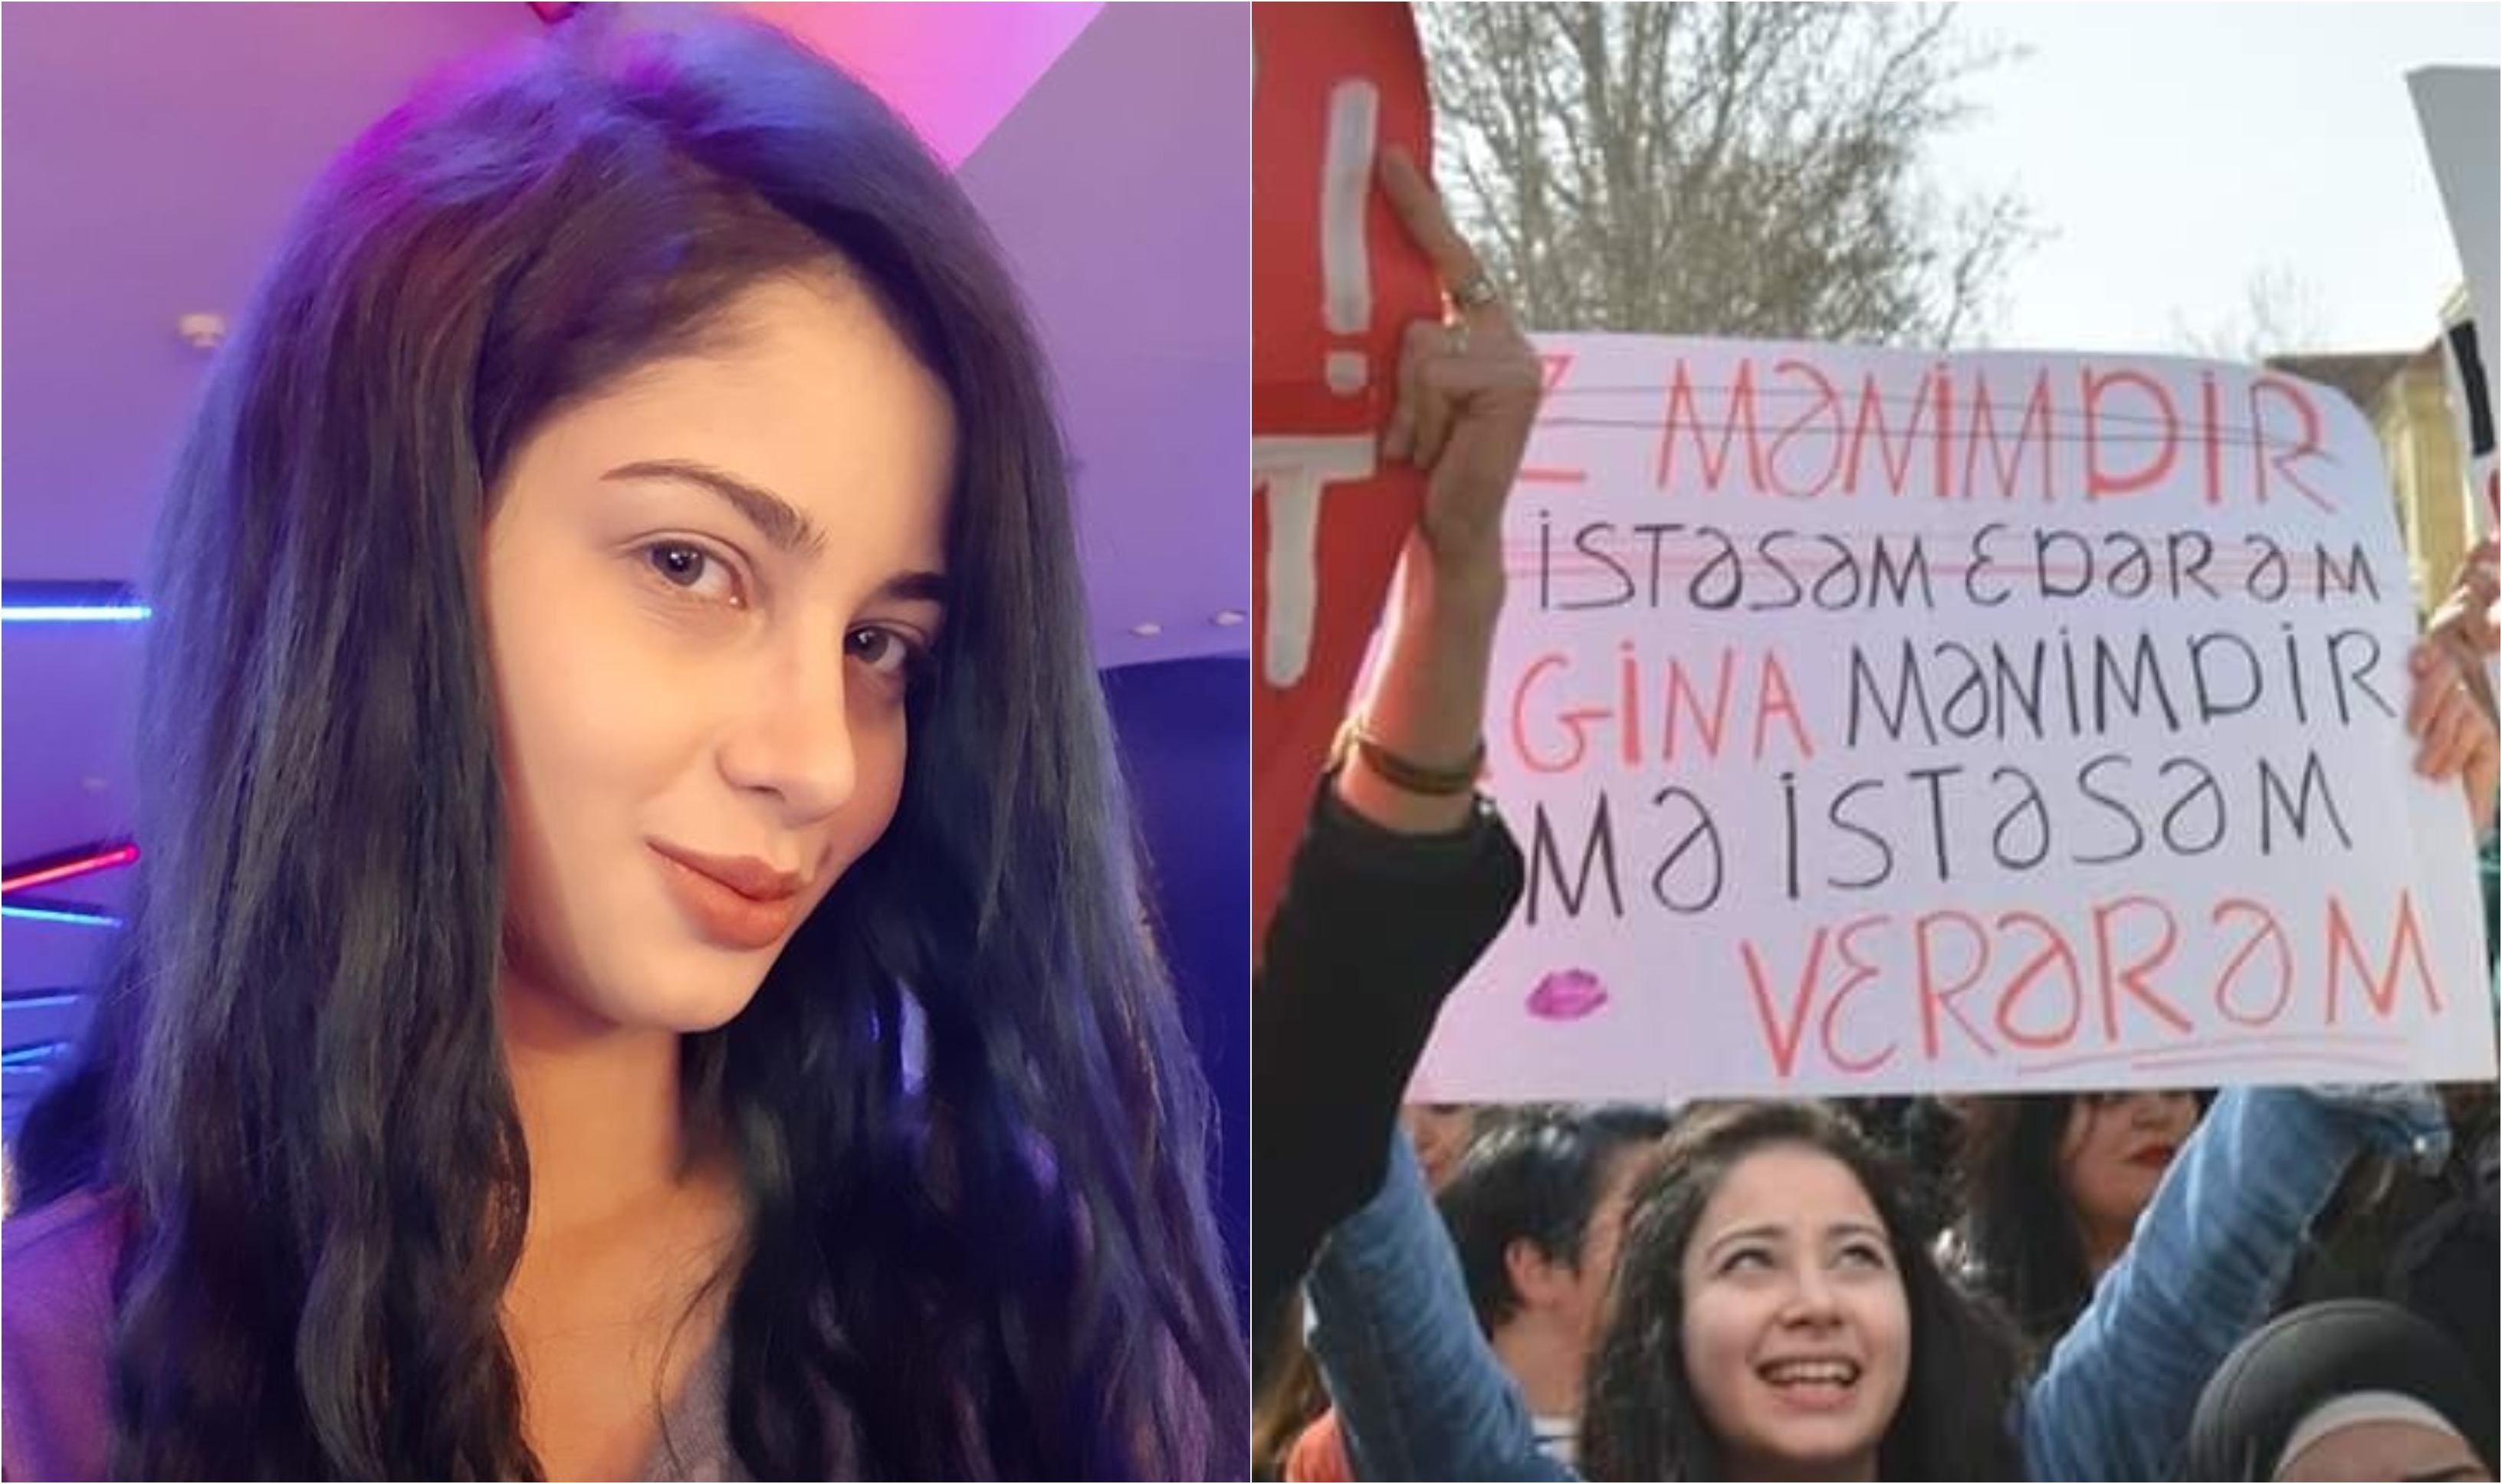 "Azərbaycanda seks inqilabı etdim" - Qalmaqallı plakatı qaldıran feminist qız - VİDEO